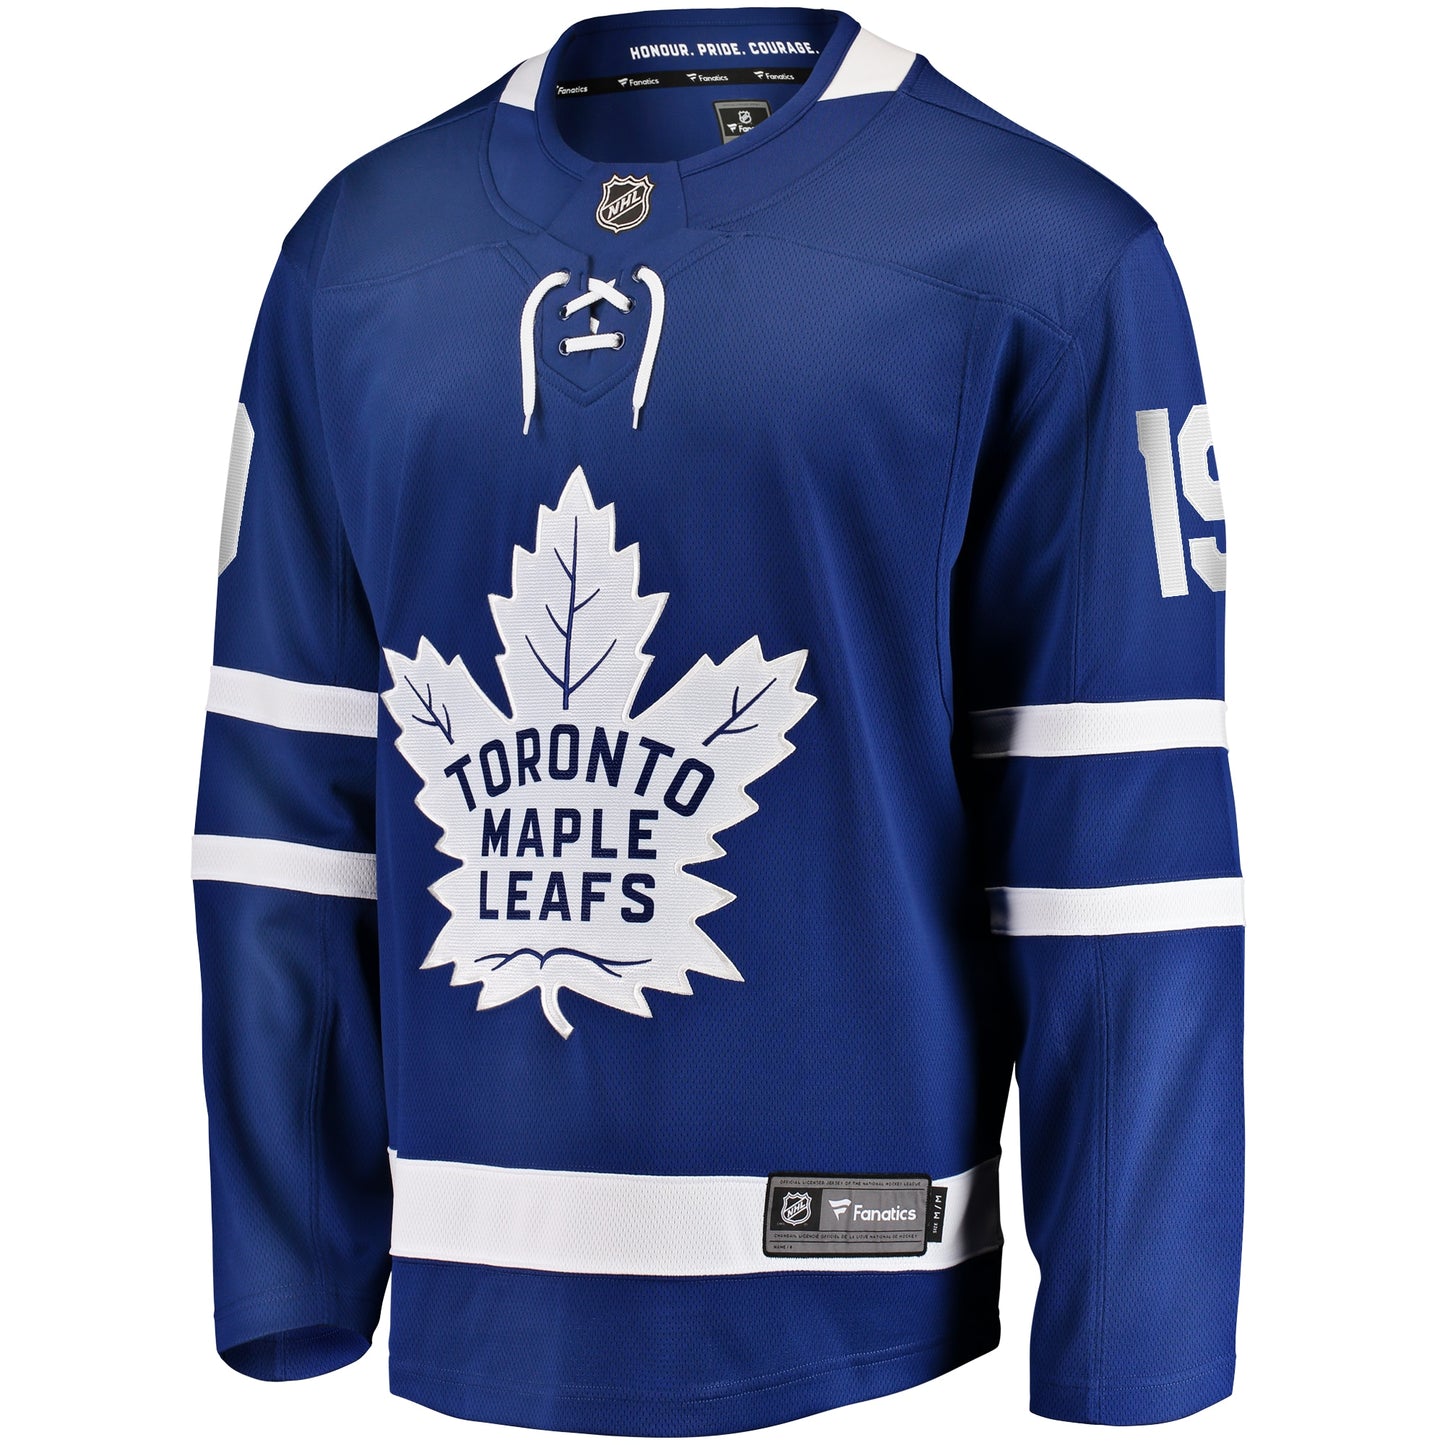 Calle Jarnkrok Toronto Maple Leafs Fanatics Branded Home Breakaway Player Jersey - Blue